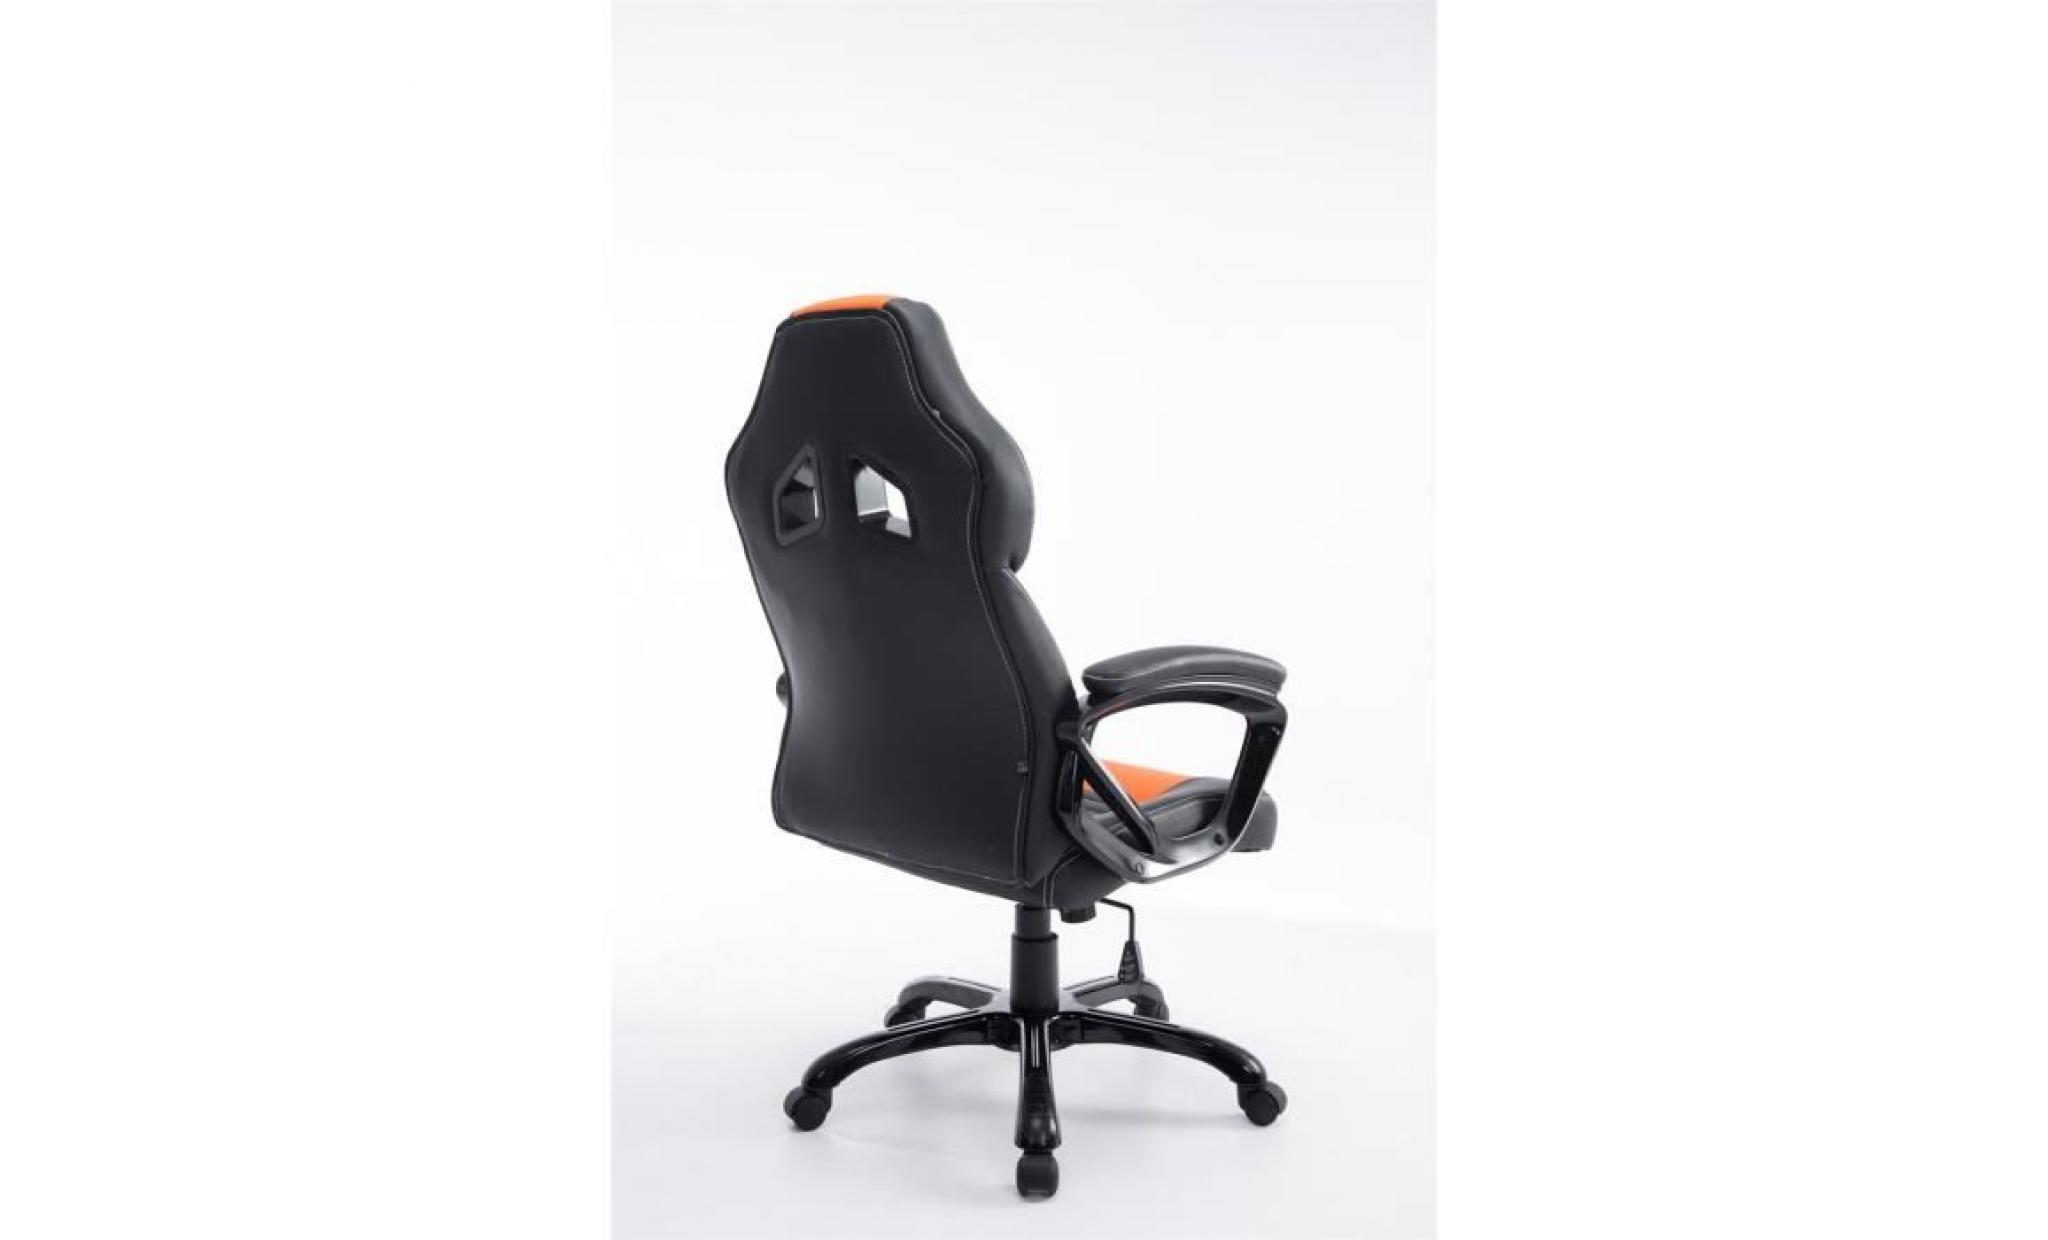 clp fauteuil de bureau pedro xl, réglable en hauteur 46   56 cm, capacité de charge max 180 kg, revêtement de haute qualité pas cher